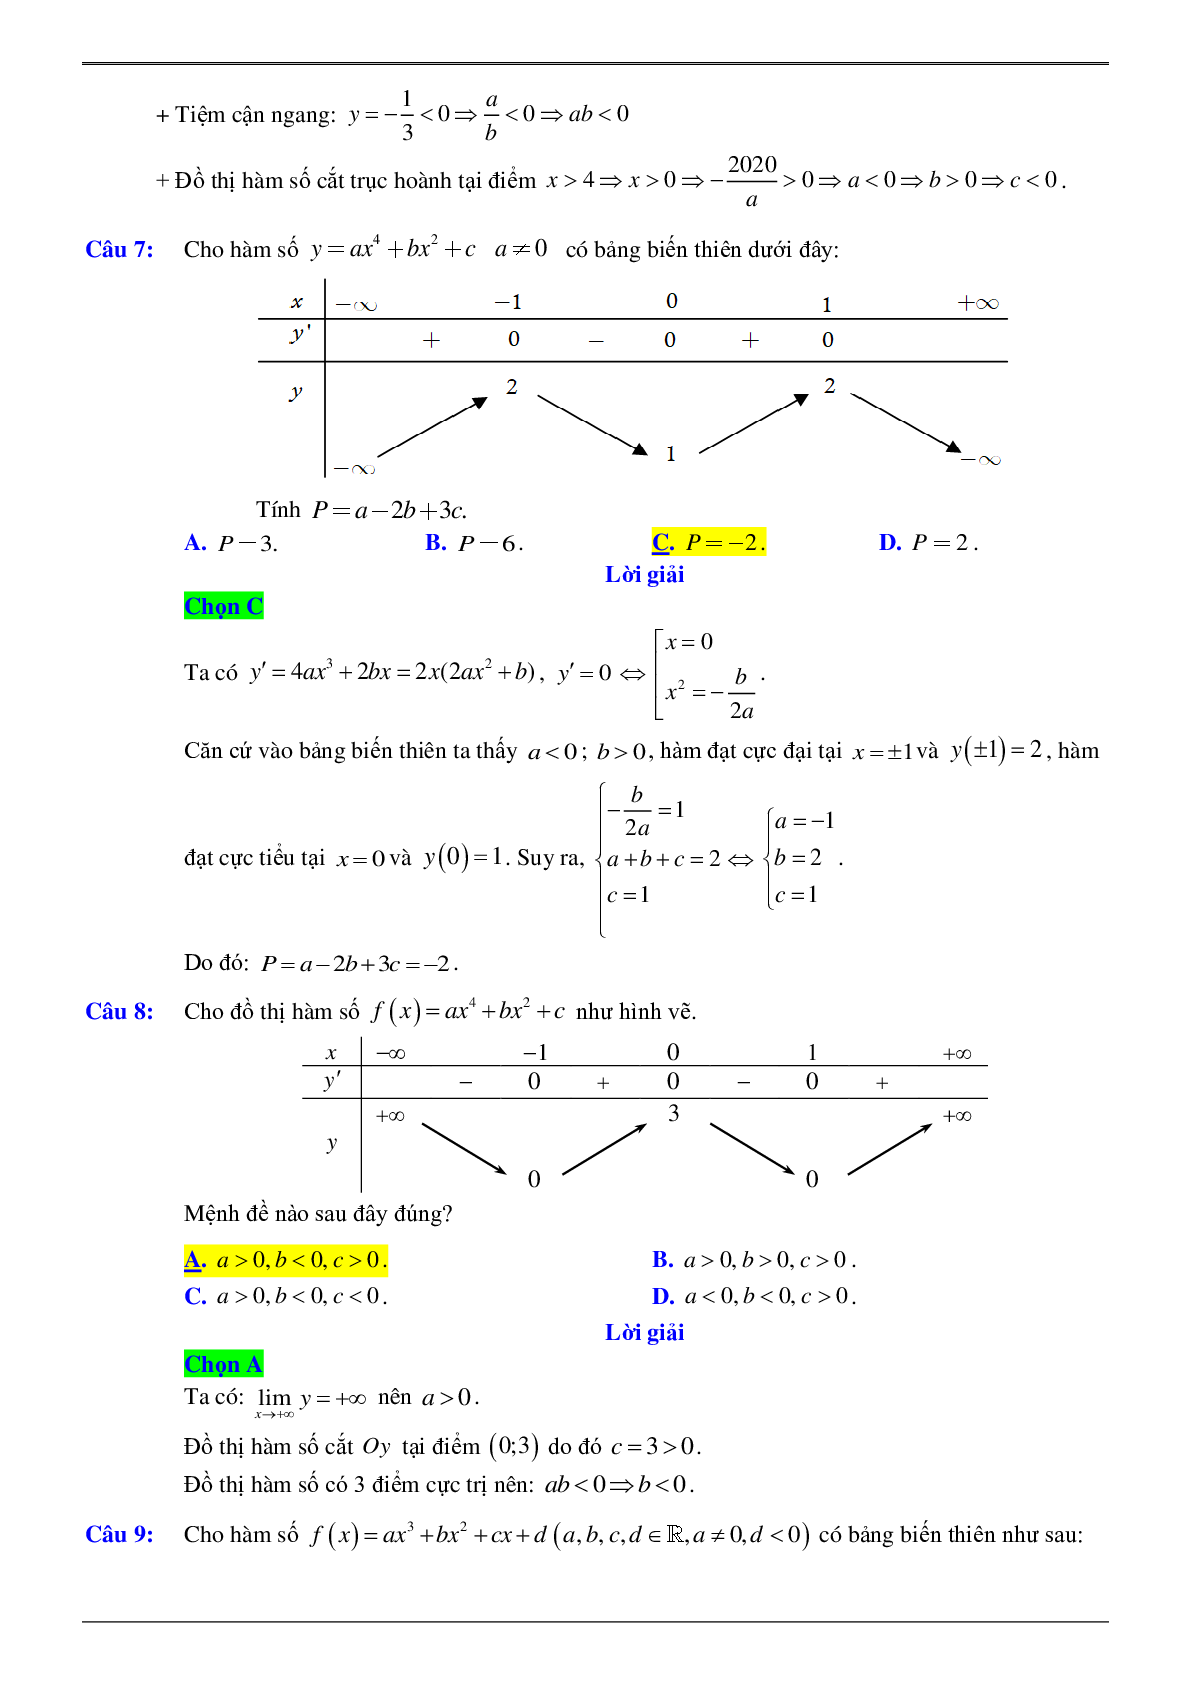 Xác định hệ số của hàm số khi biết bảng biến thiên hoặc đồ thị (trang 5)